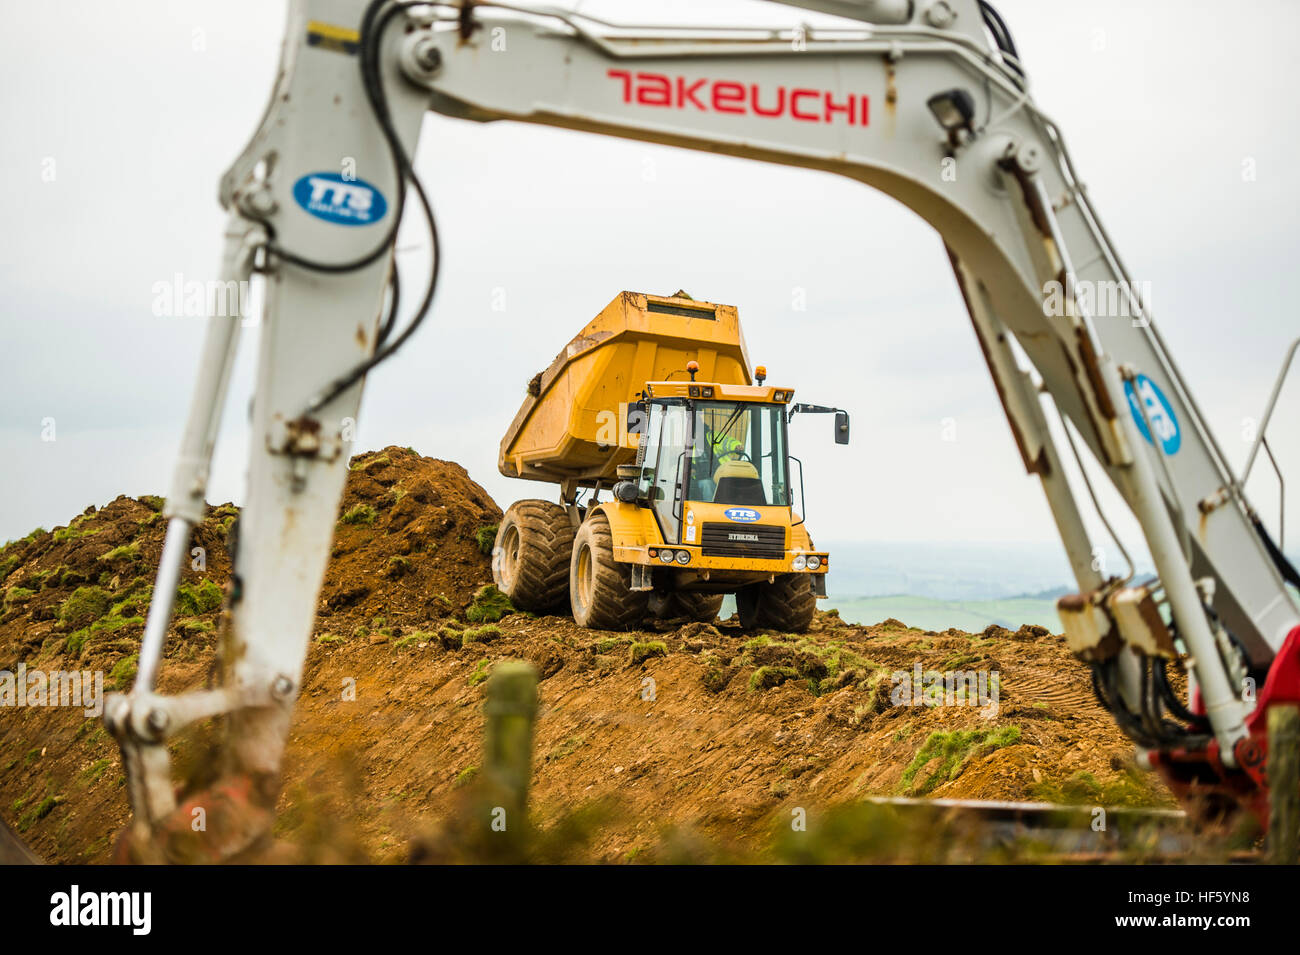 Les travaux de construction au Royaume-Uni : les entrepreneurs TTS préparer le terrain et route d'accès pour une nouvelle éolienne près de Nant yr Arian, Ponterwyd, Ceredigion, pays de Galles, Royaume-Uni, Octobre 2016 Banque D'Images